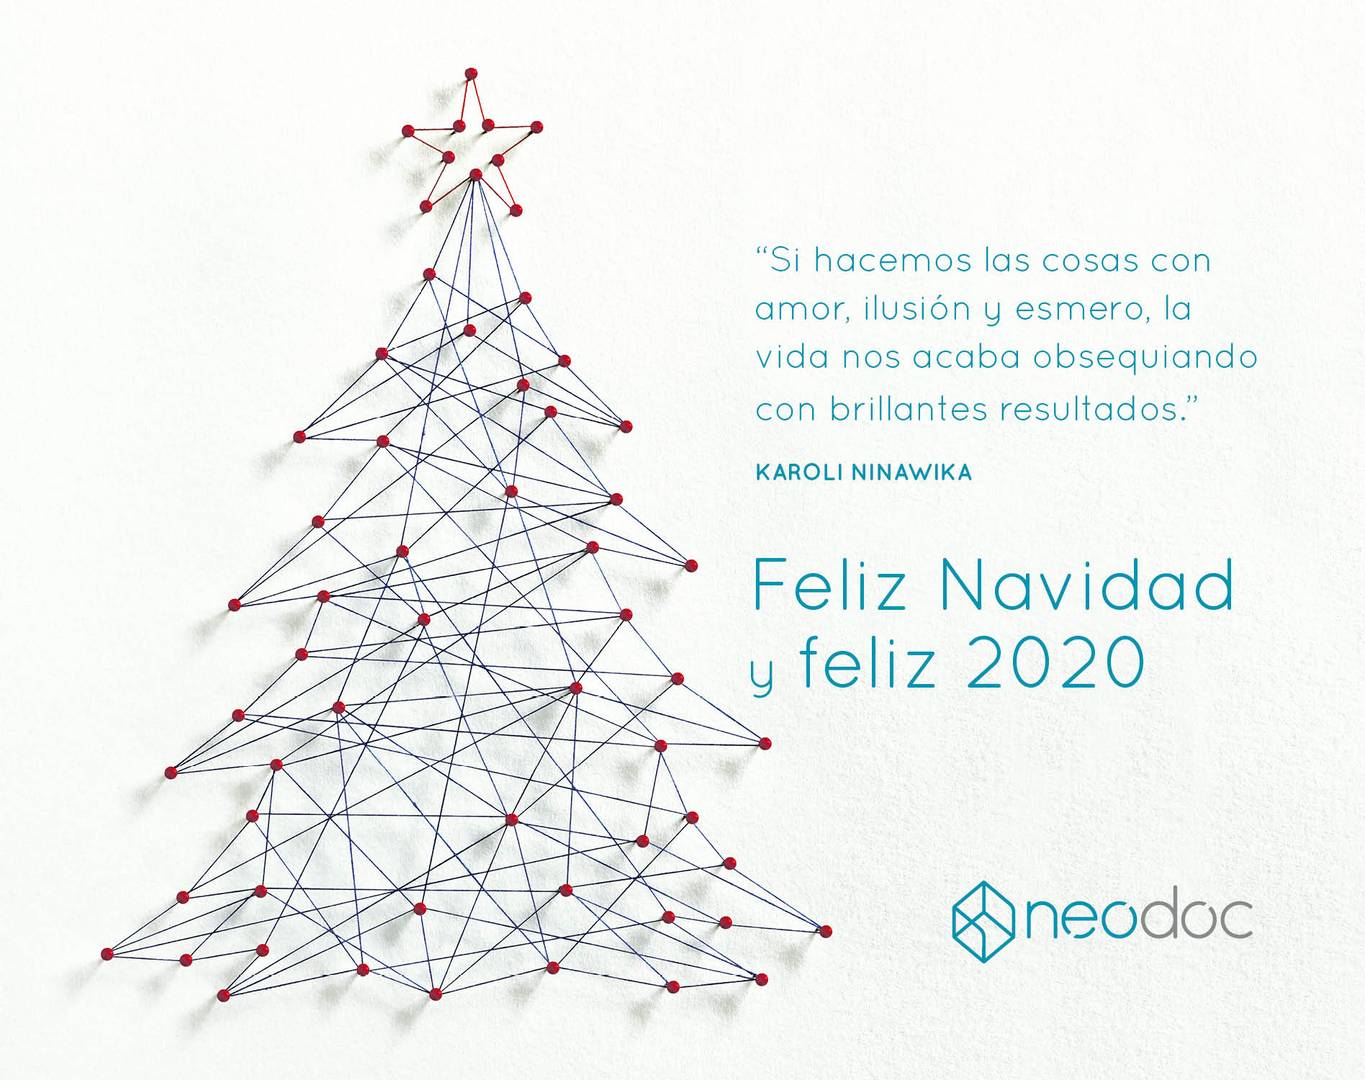 Felicitacion Online Neodoc 2019 00 - Feliz Navidad ?? y Feliz 2020